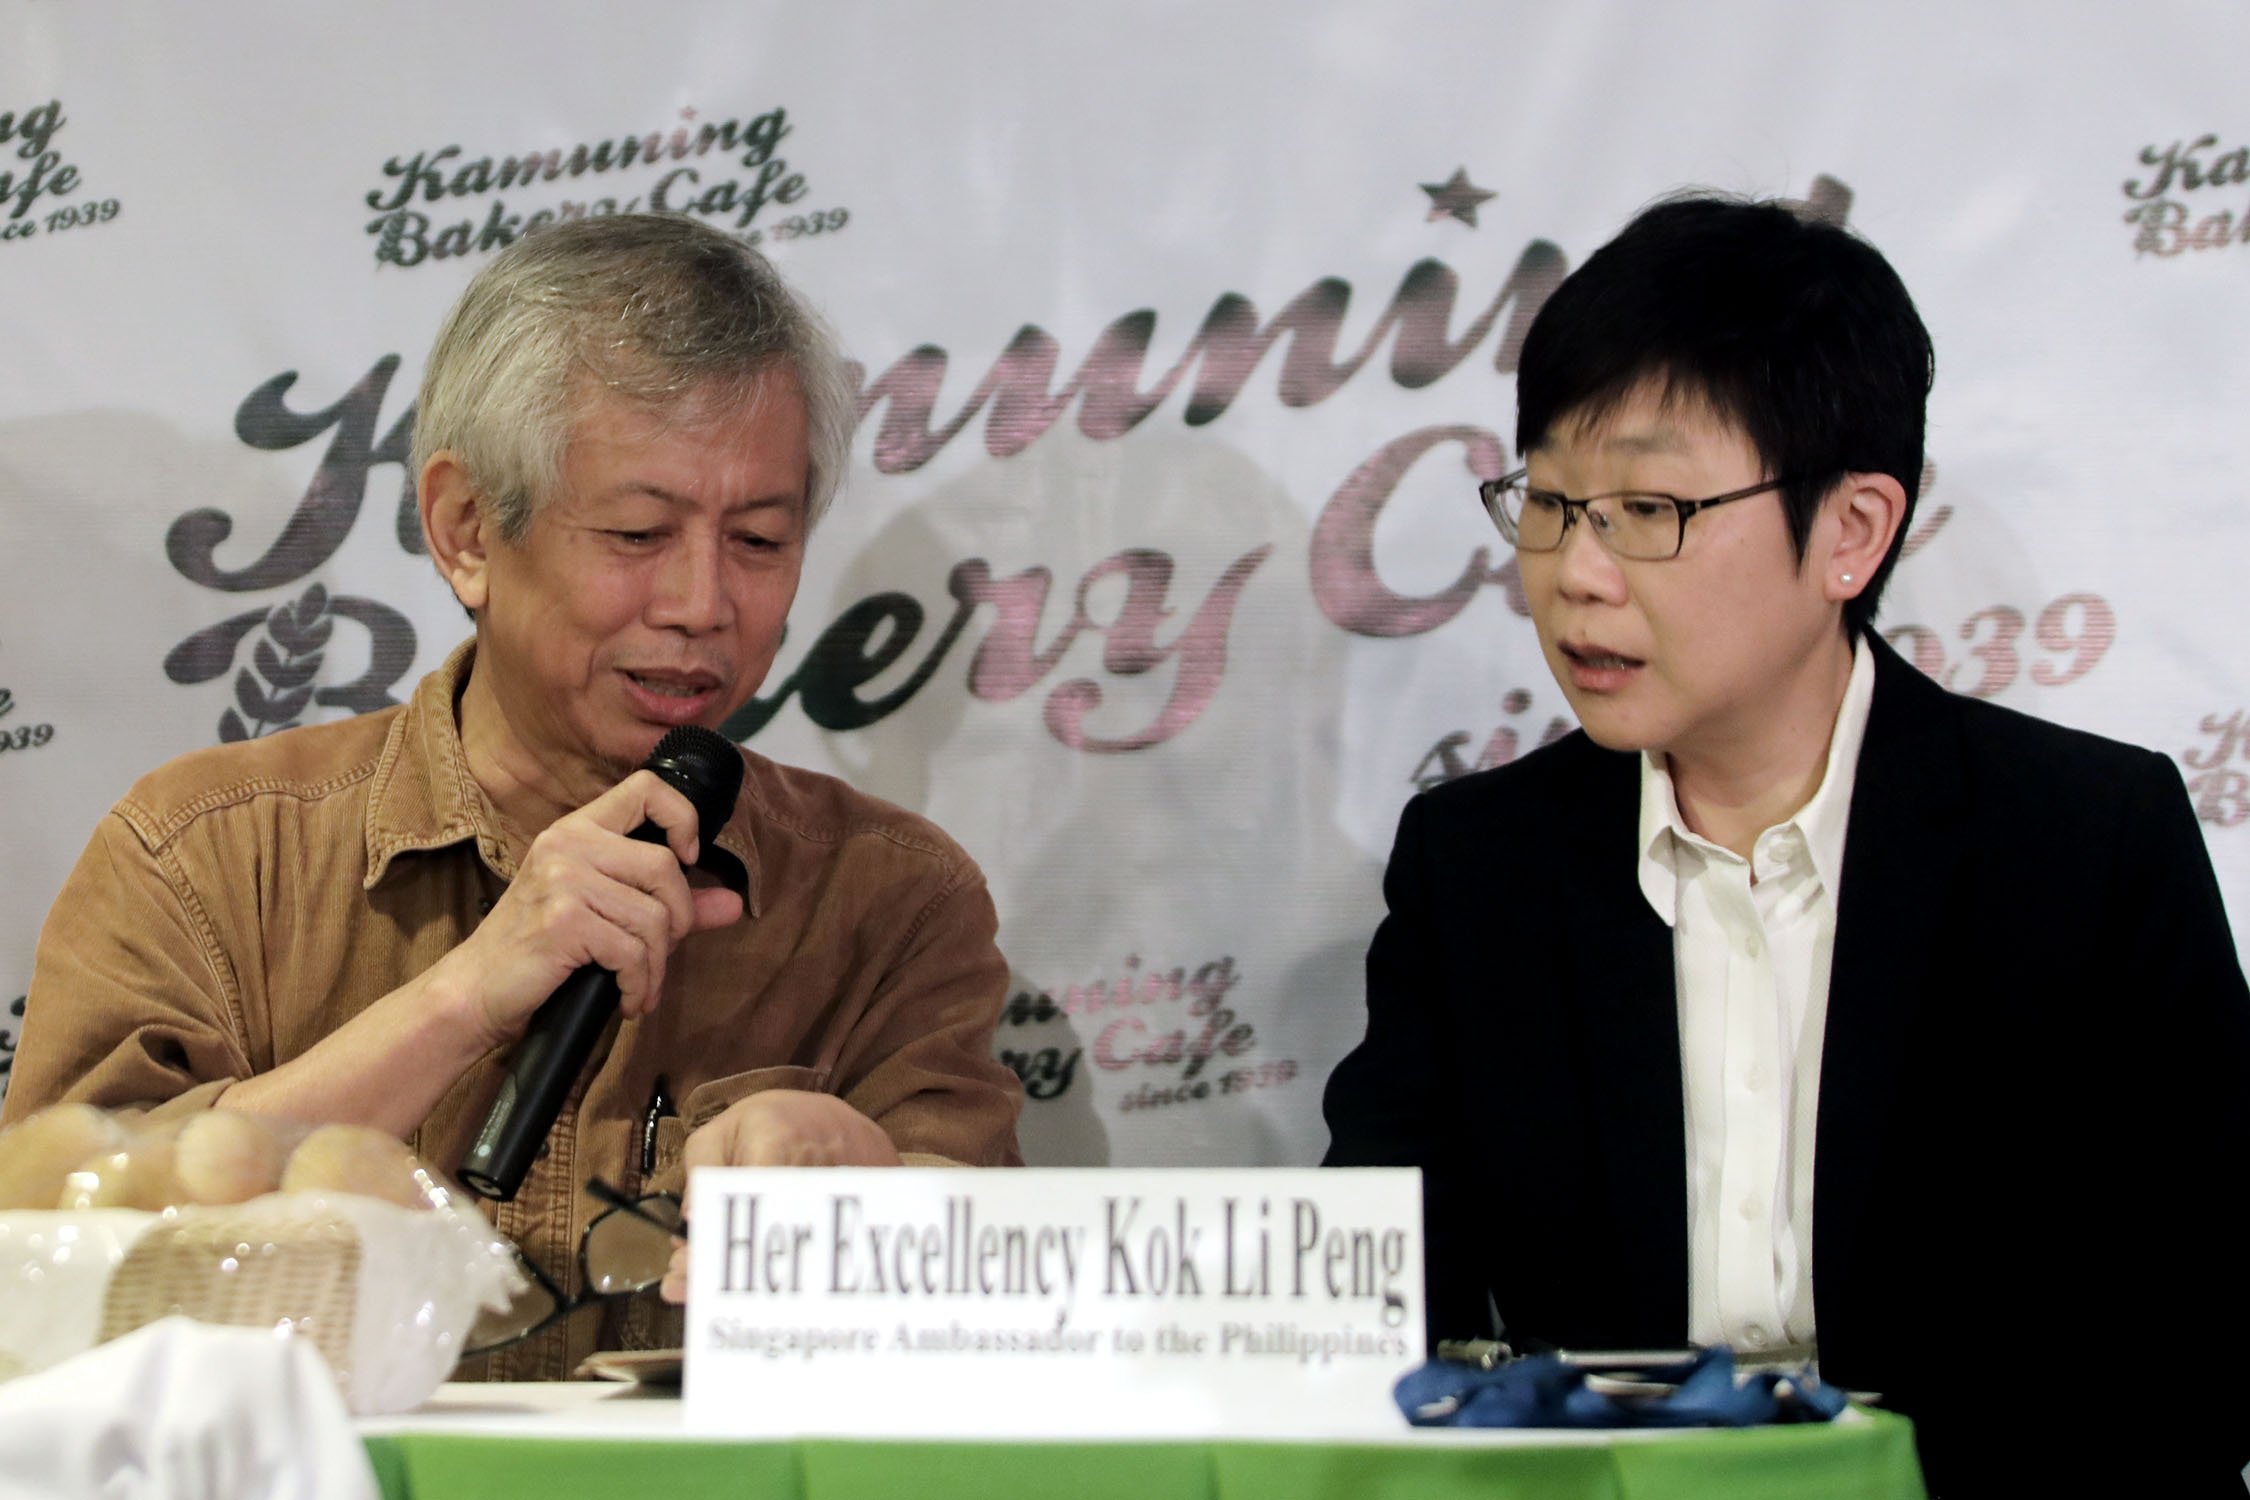 Singaporean Ambassador meets poet-writer Jose Lacaba at Pandesal Forum